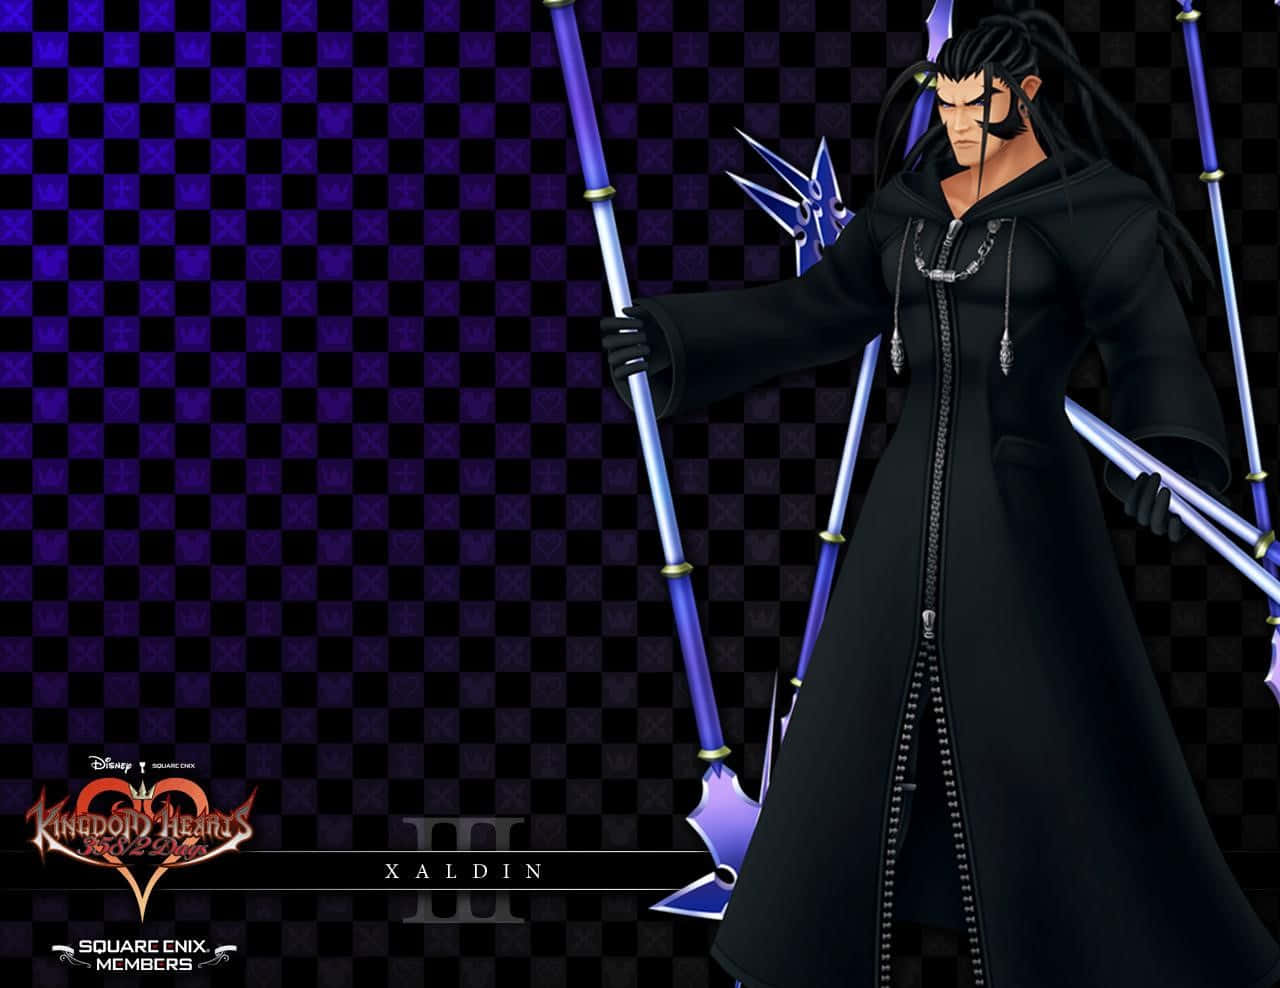 Miembrosde La Organización Xiii De Kingdom Hearts Posando En Una Escena De Batalla Intensa. Fondo de pantalla